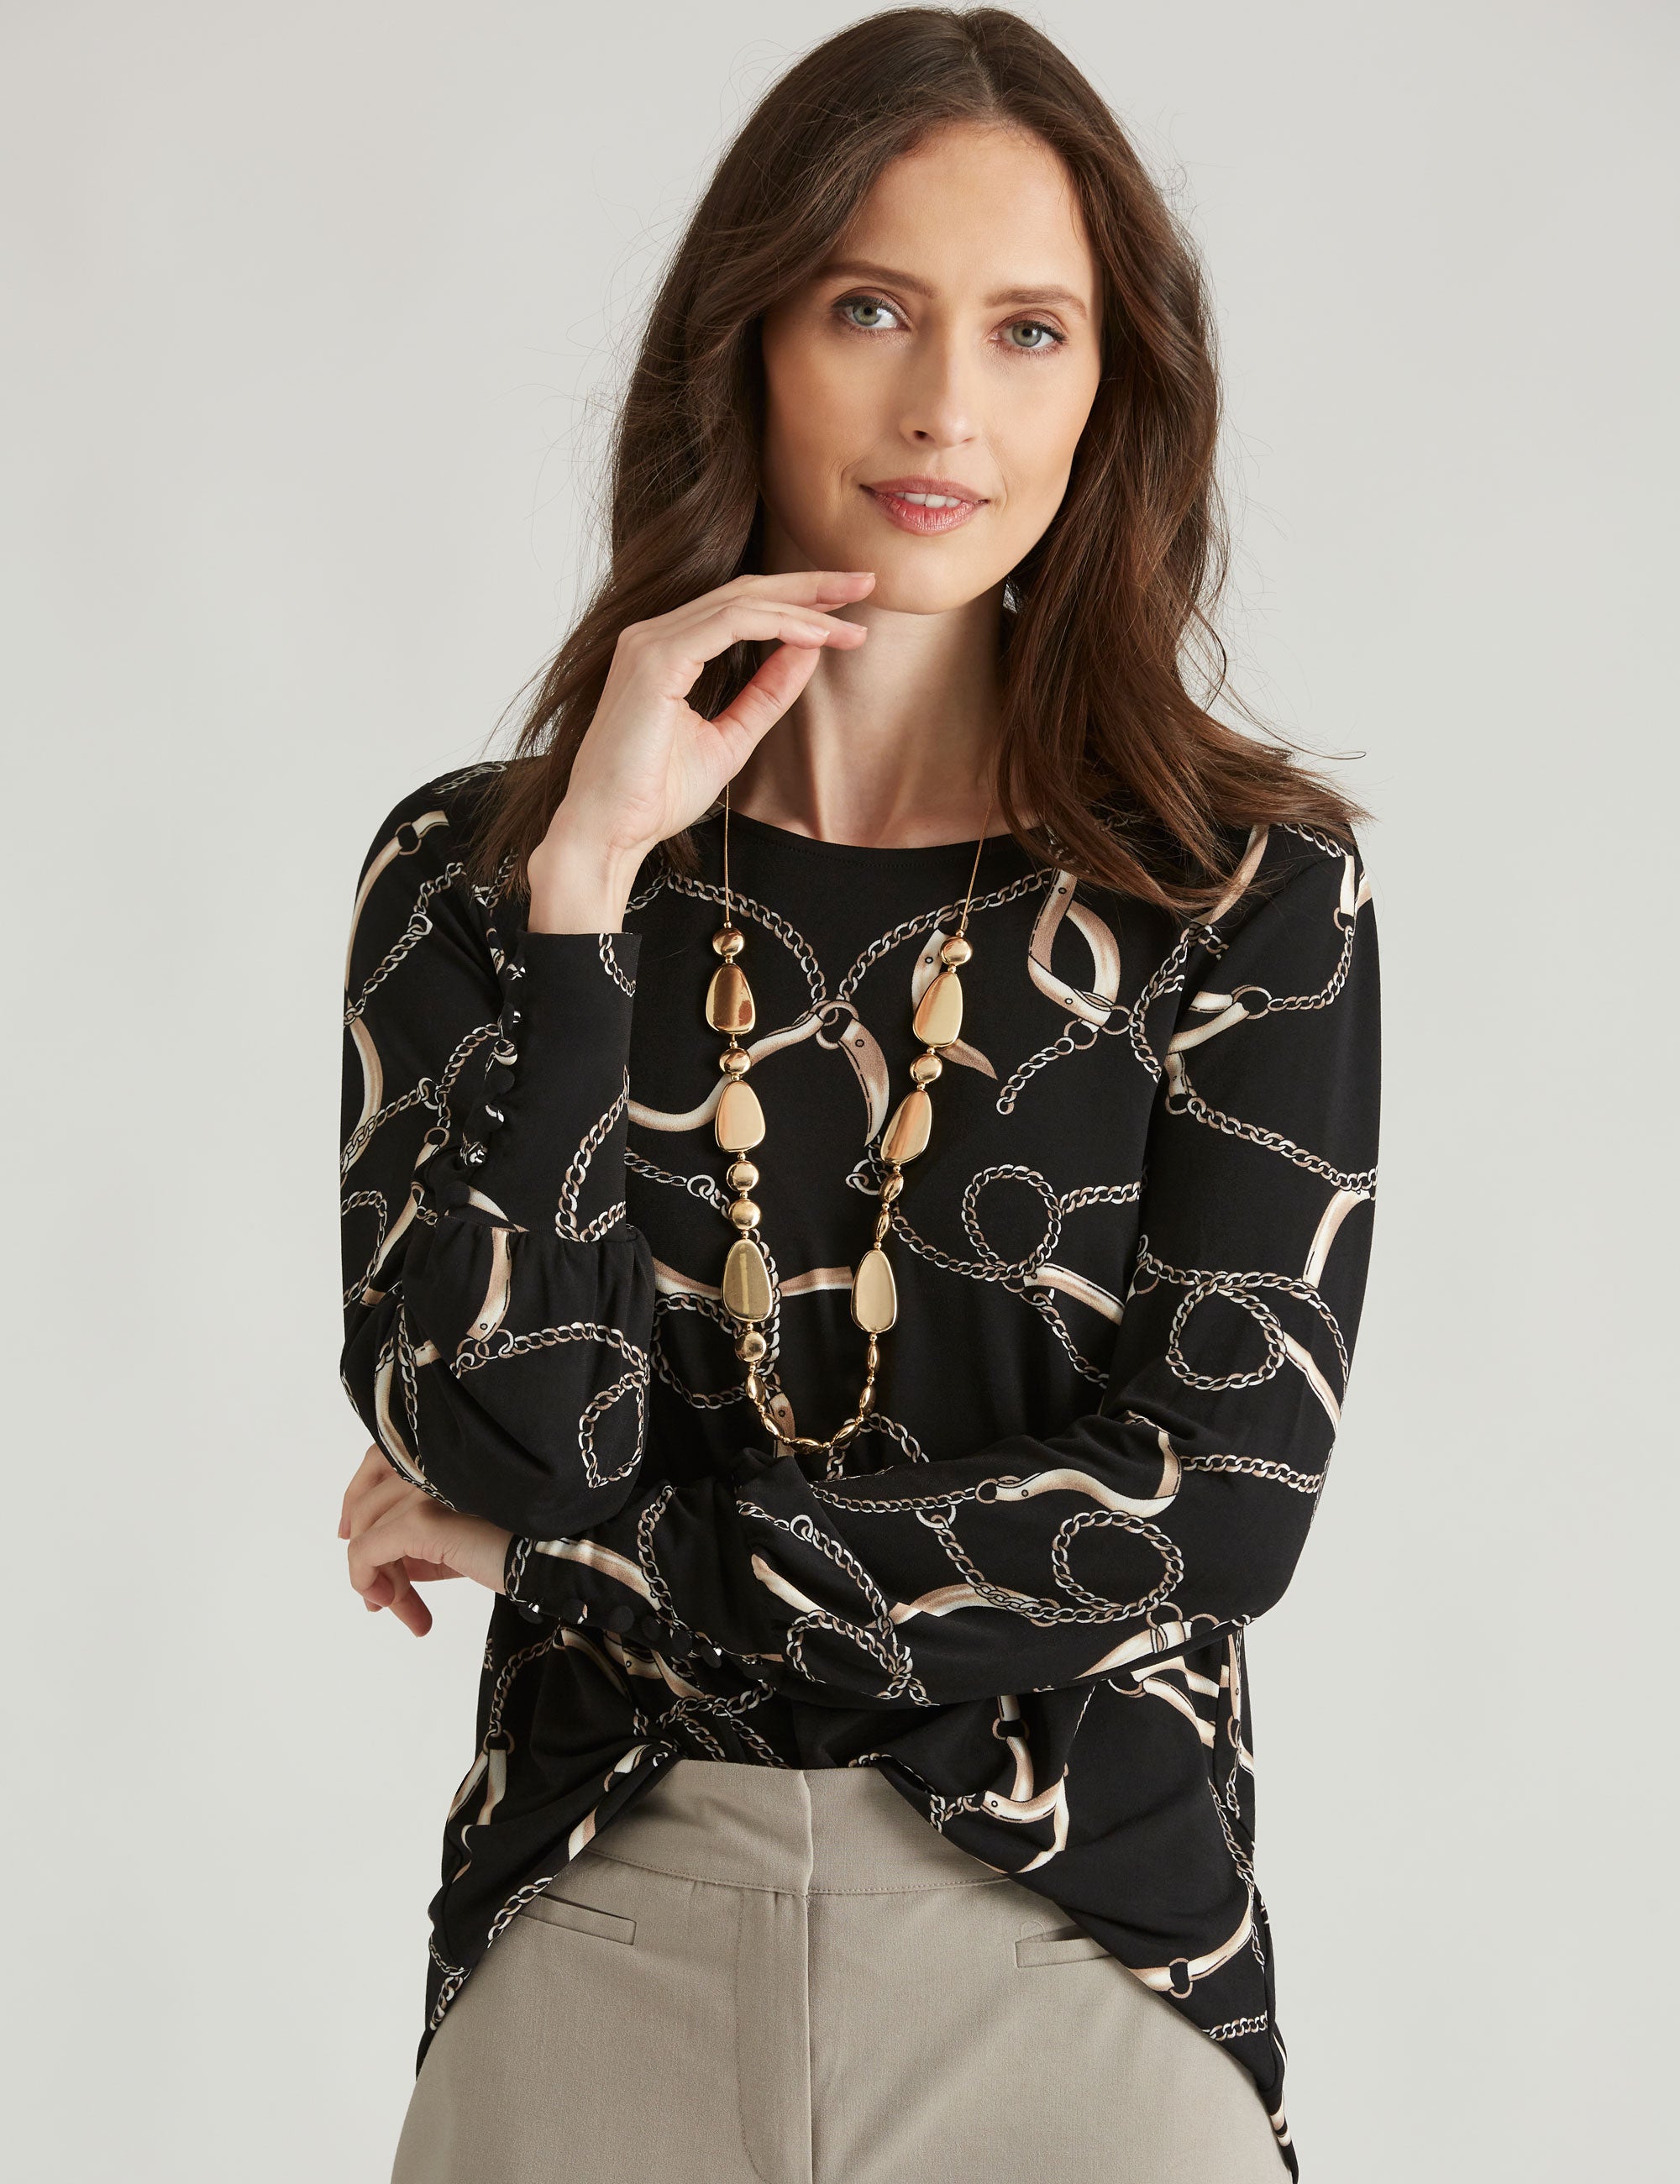 Noni B Cuff Detail Chain Knitwear Top | Katies